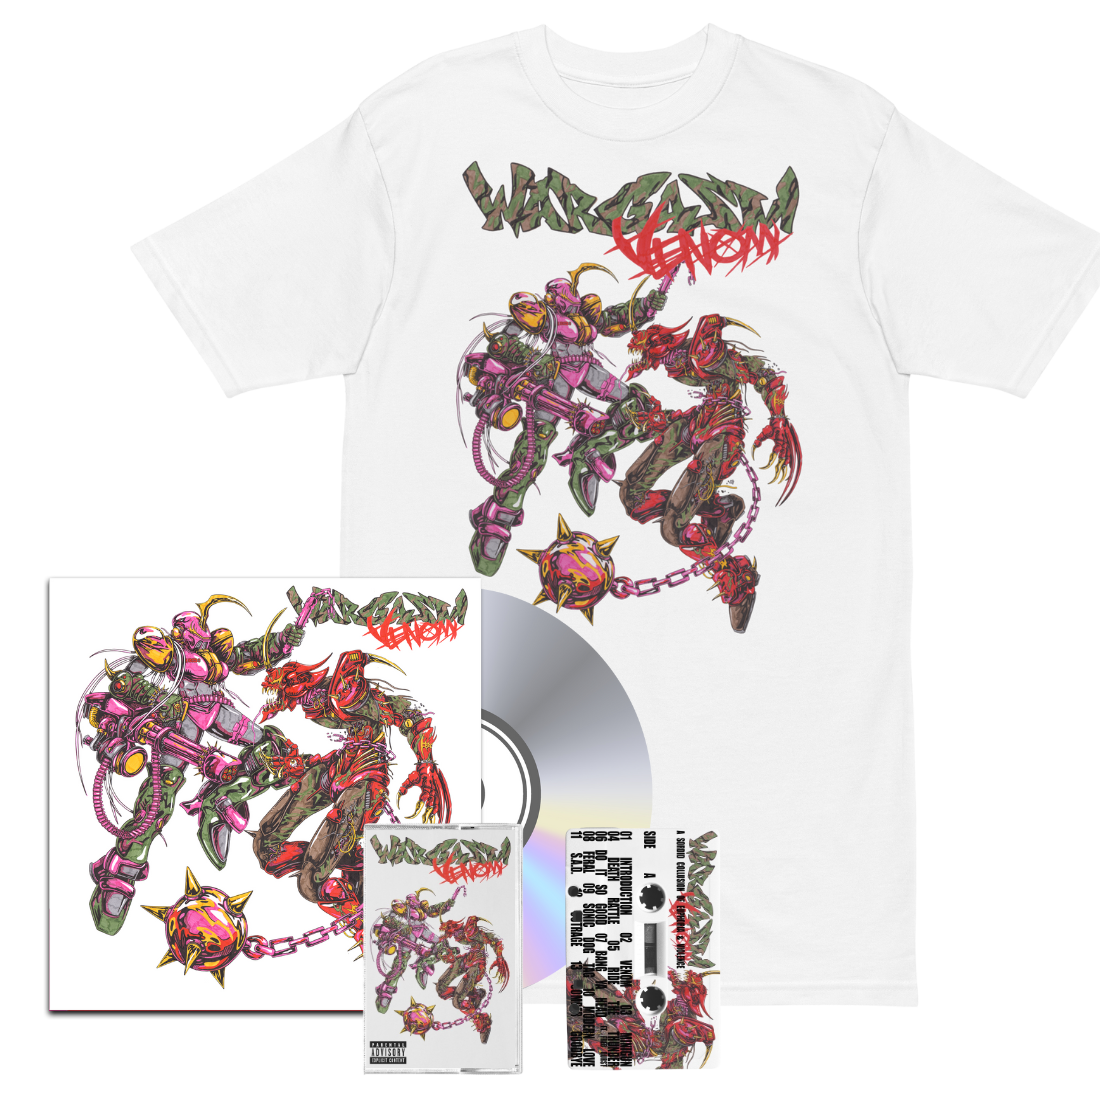 Venom: Tee, CD, Cassette + Signed Art Card